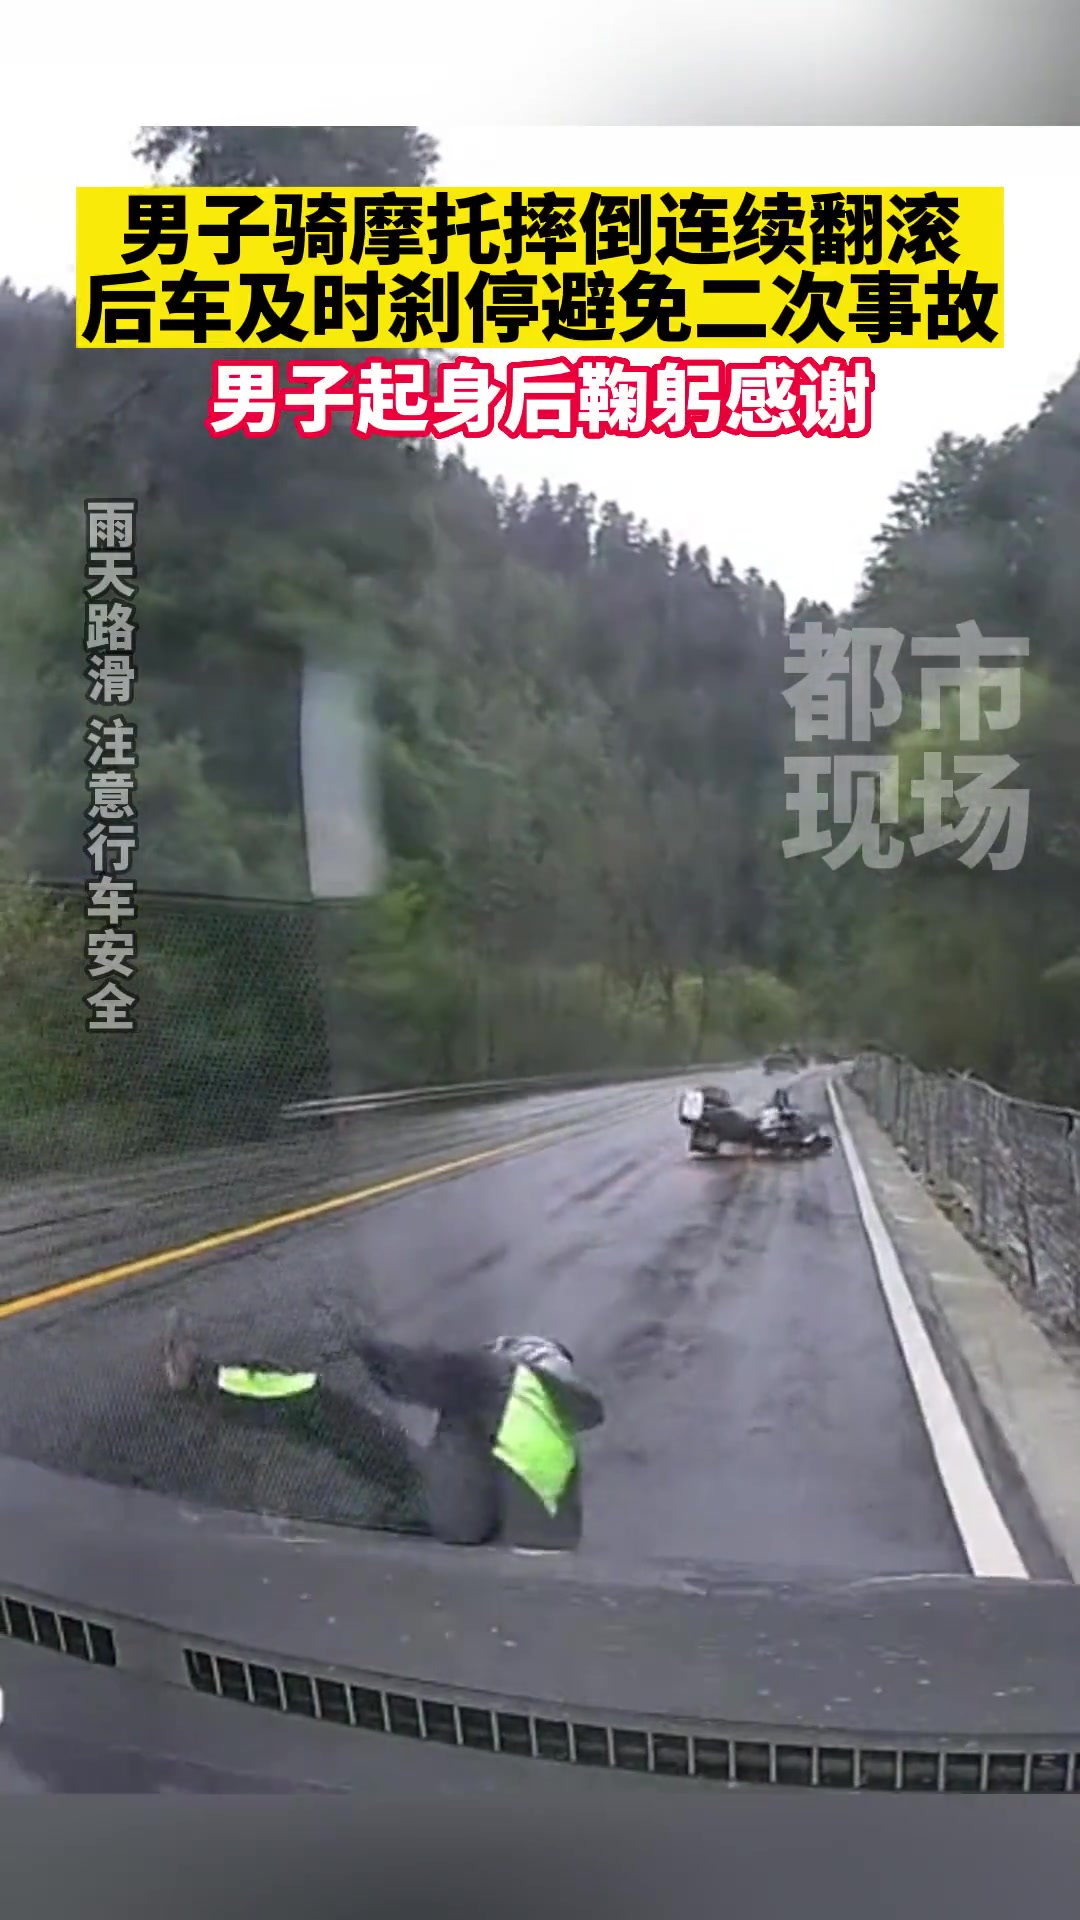 男子骑摩托摔倒连续翻滚 幸好后车刹停避免二次事故